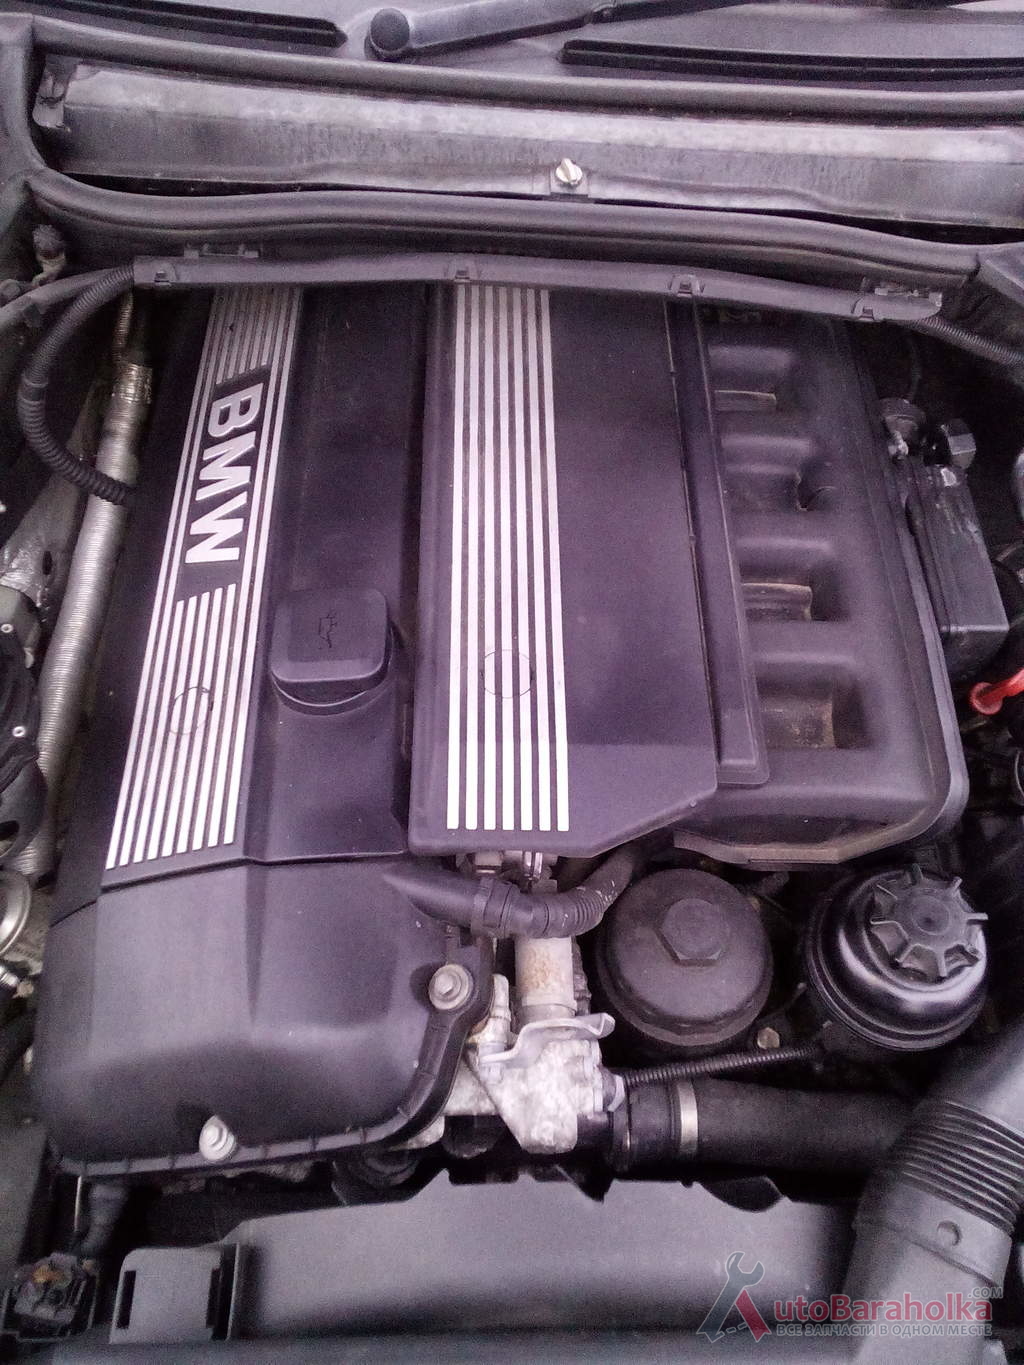 Продам Мотор БМВ М52В28 двигатель BMW 3 5 7 Е21 Е25 Е28 Е30 Е32 Е34 Е36 Е38 Е39 Е46 Бориспіль